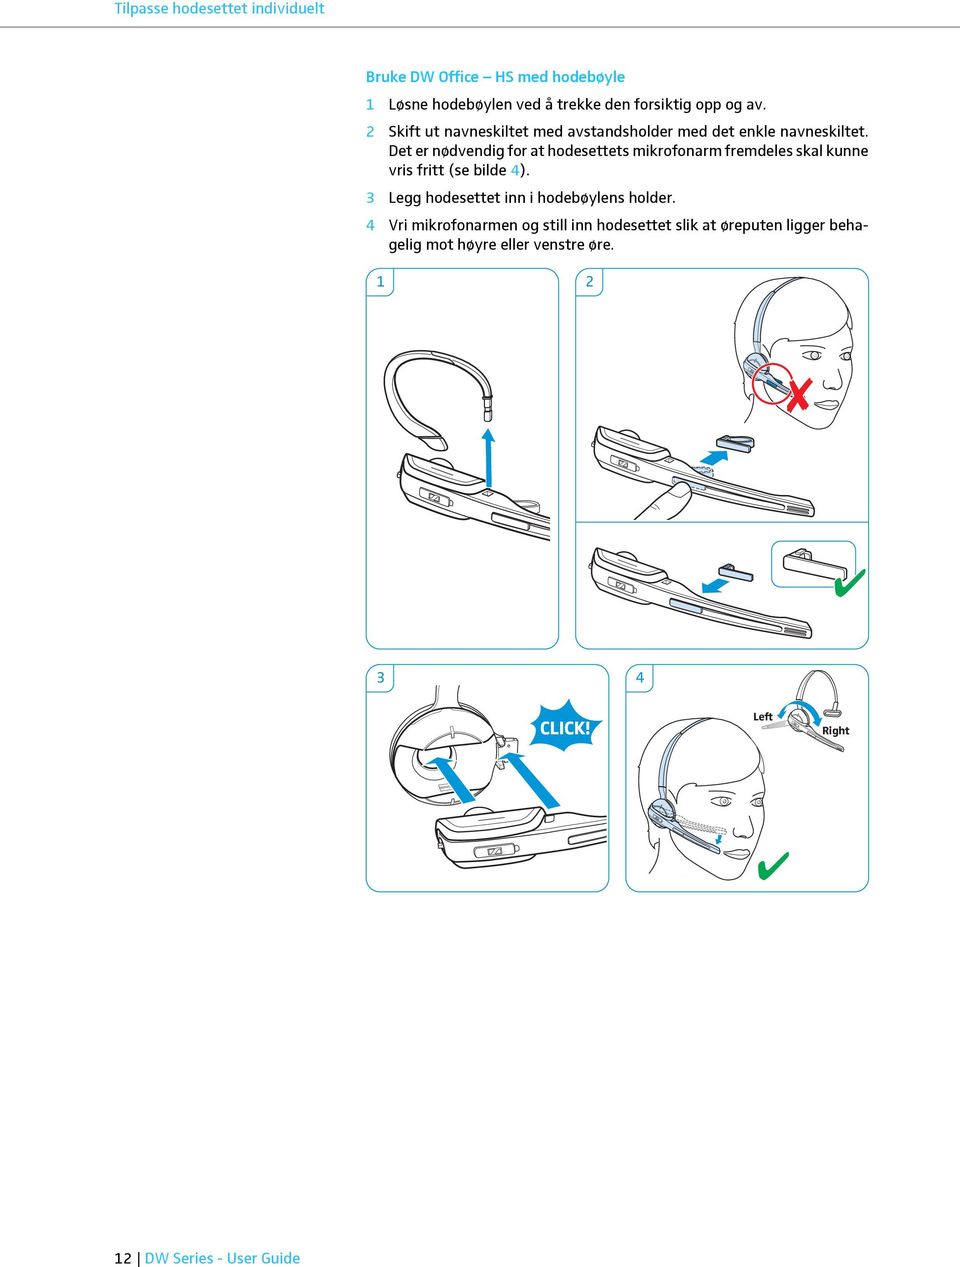 Det er nødvendig for at hodesettets mikrofonarm fremdeles skal kunne vris fritt (se bilde 4).